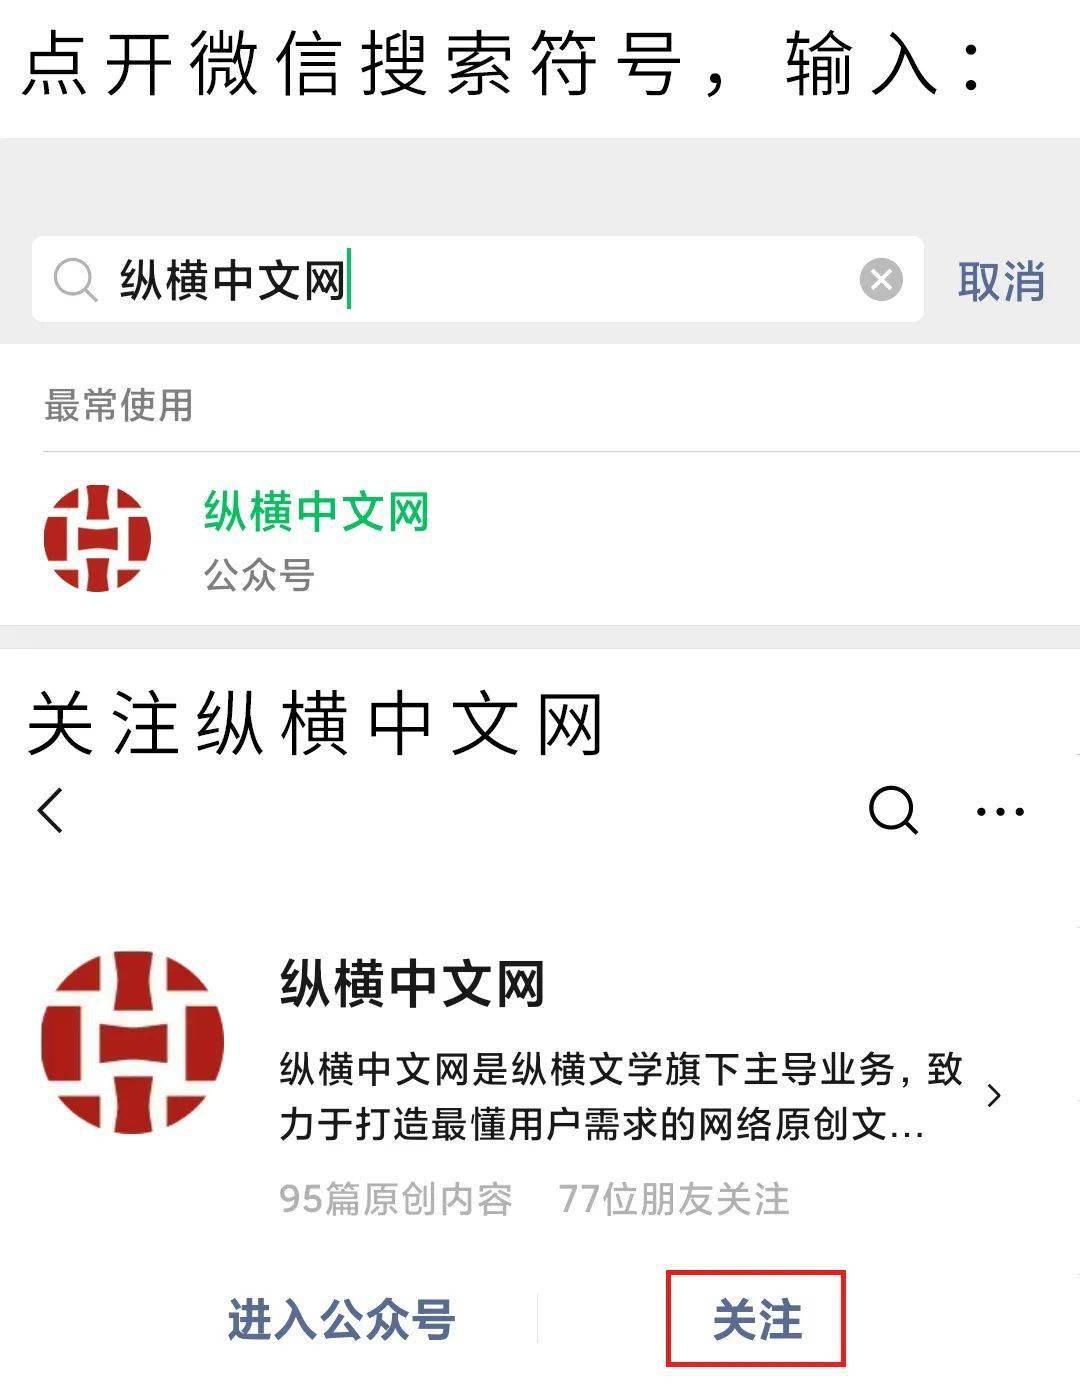 滴滴拼车正式更名为青菜拼车 联手纵横中文网送福利